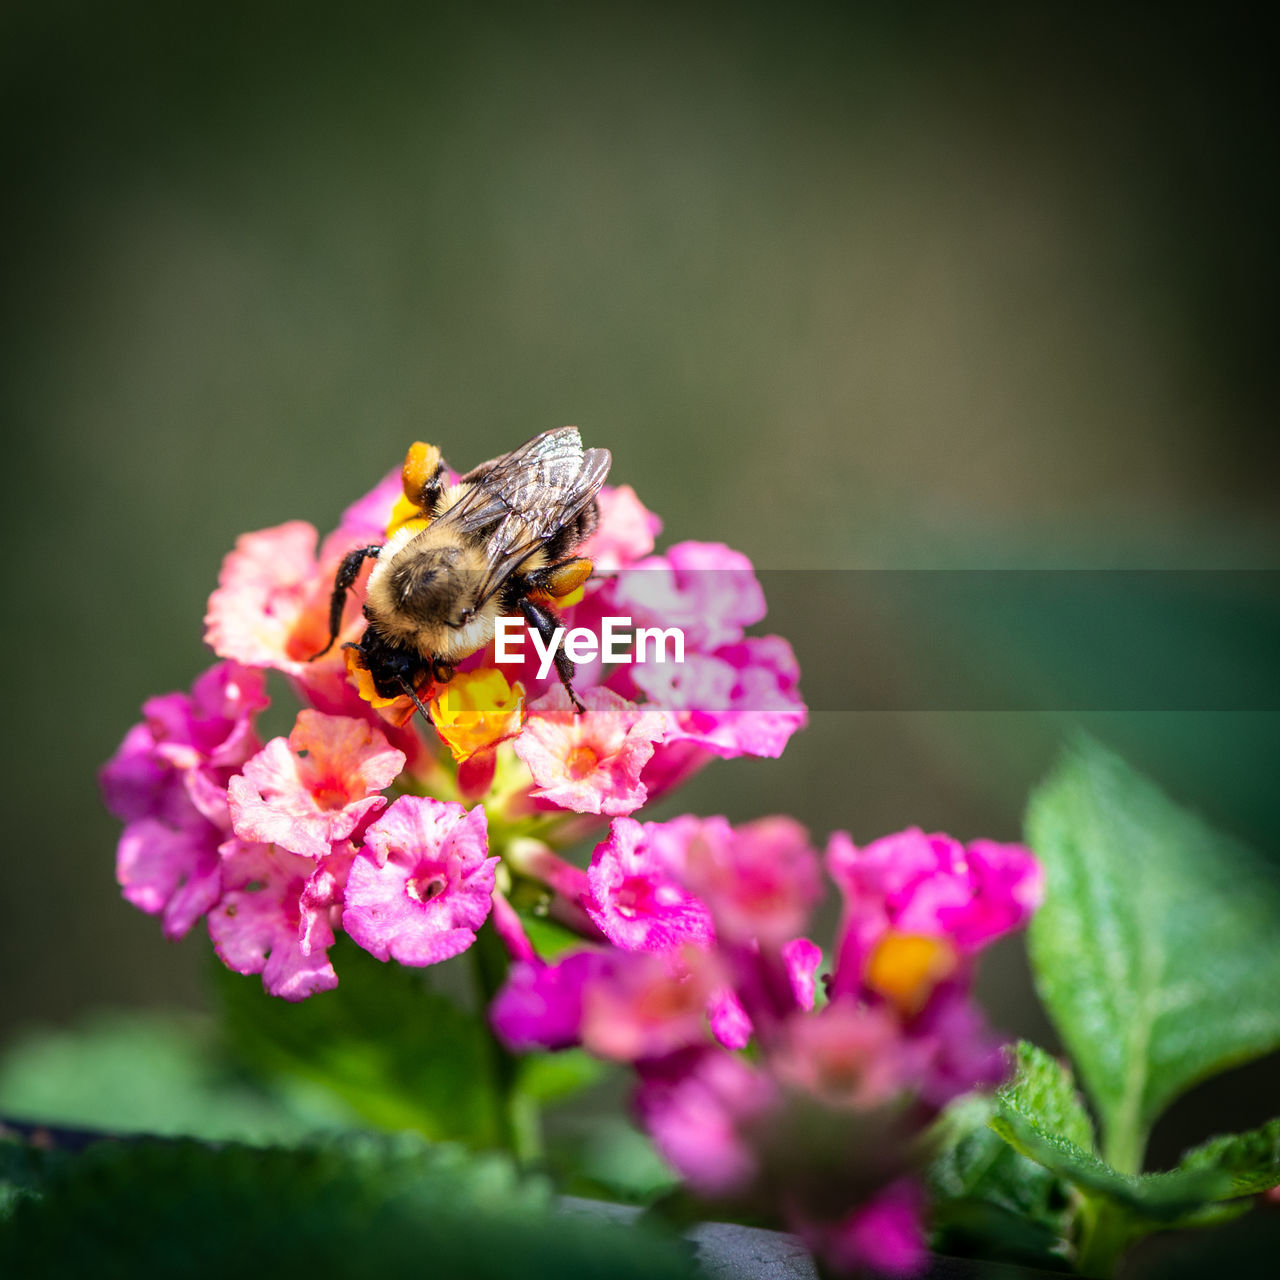 CLOSE-UP OF HONEY BEE ON PURPLE FLOWER